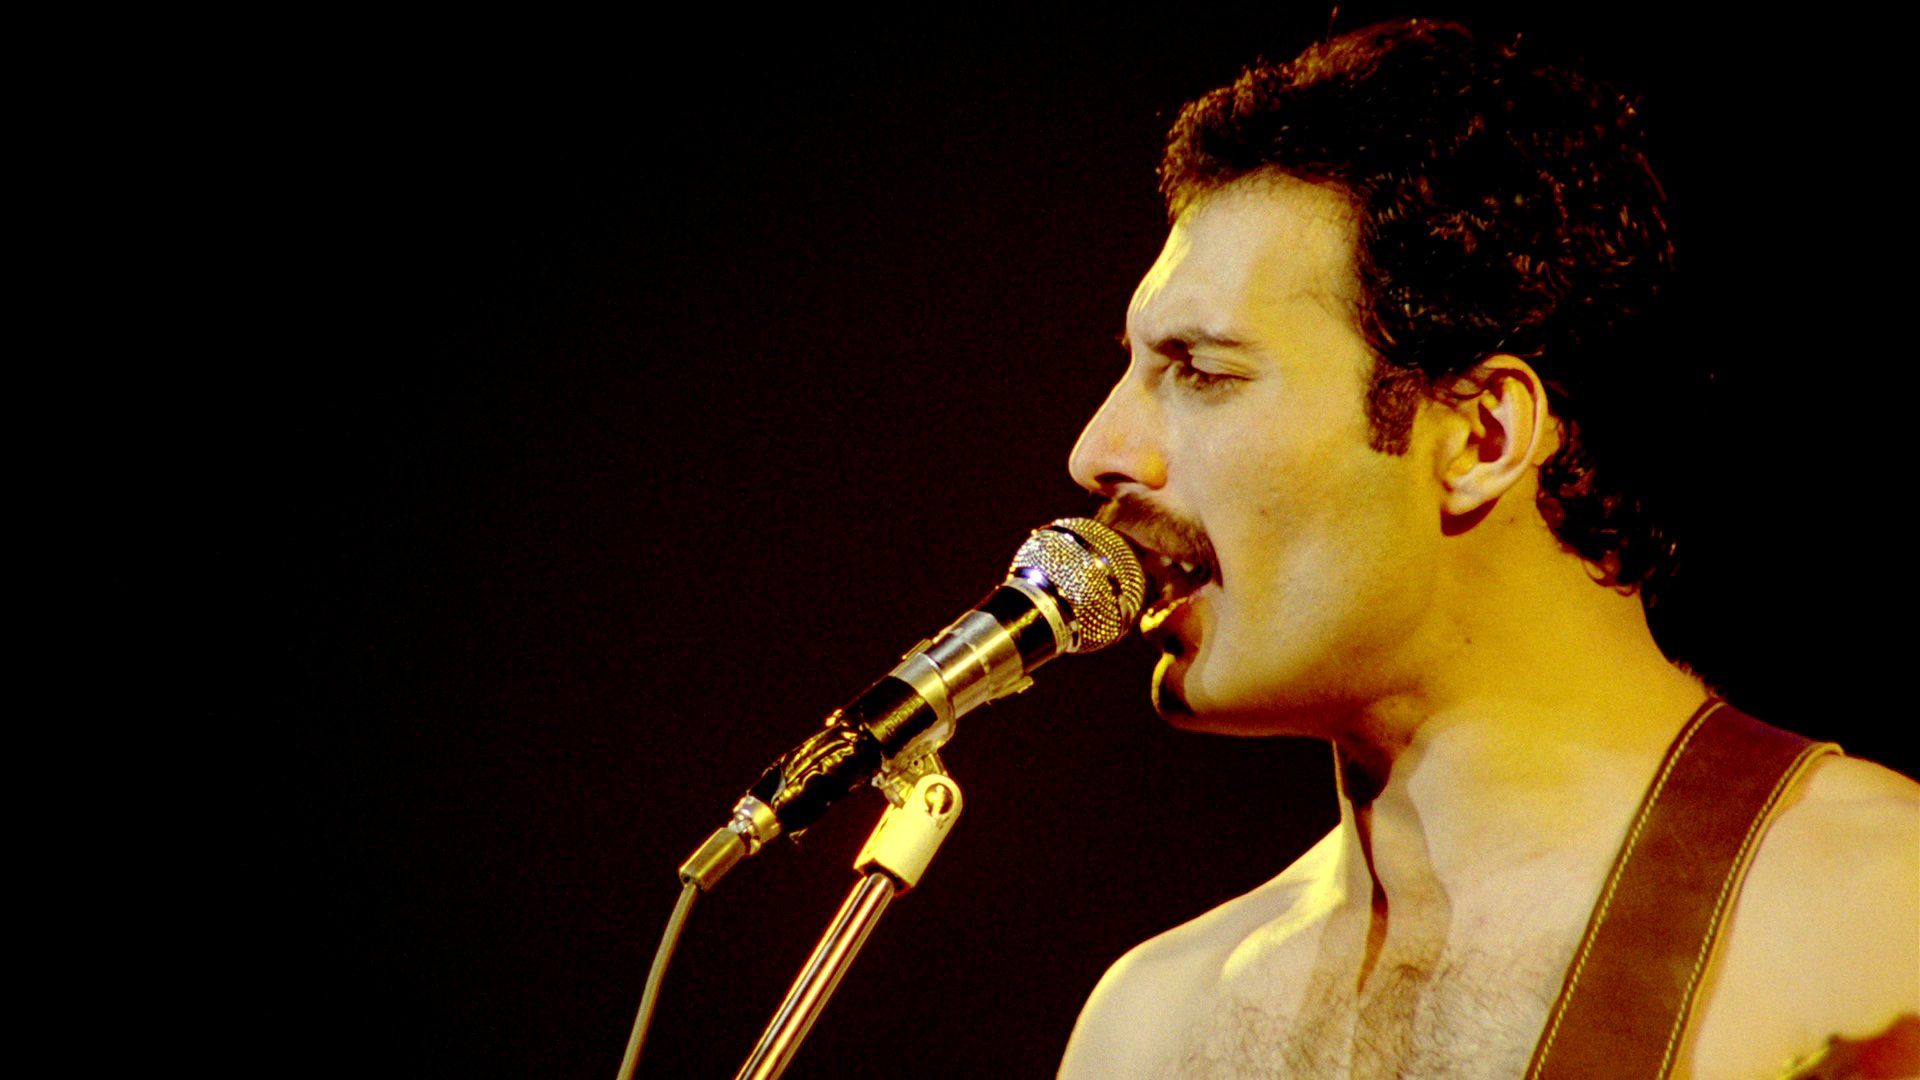 Queen Classic Rock Microphone Concert Concerts - Fondo De Pantalla Freddie Mercury Hd - HD Wallpaper 